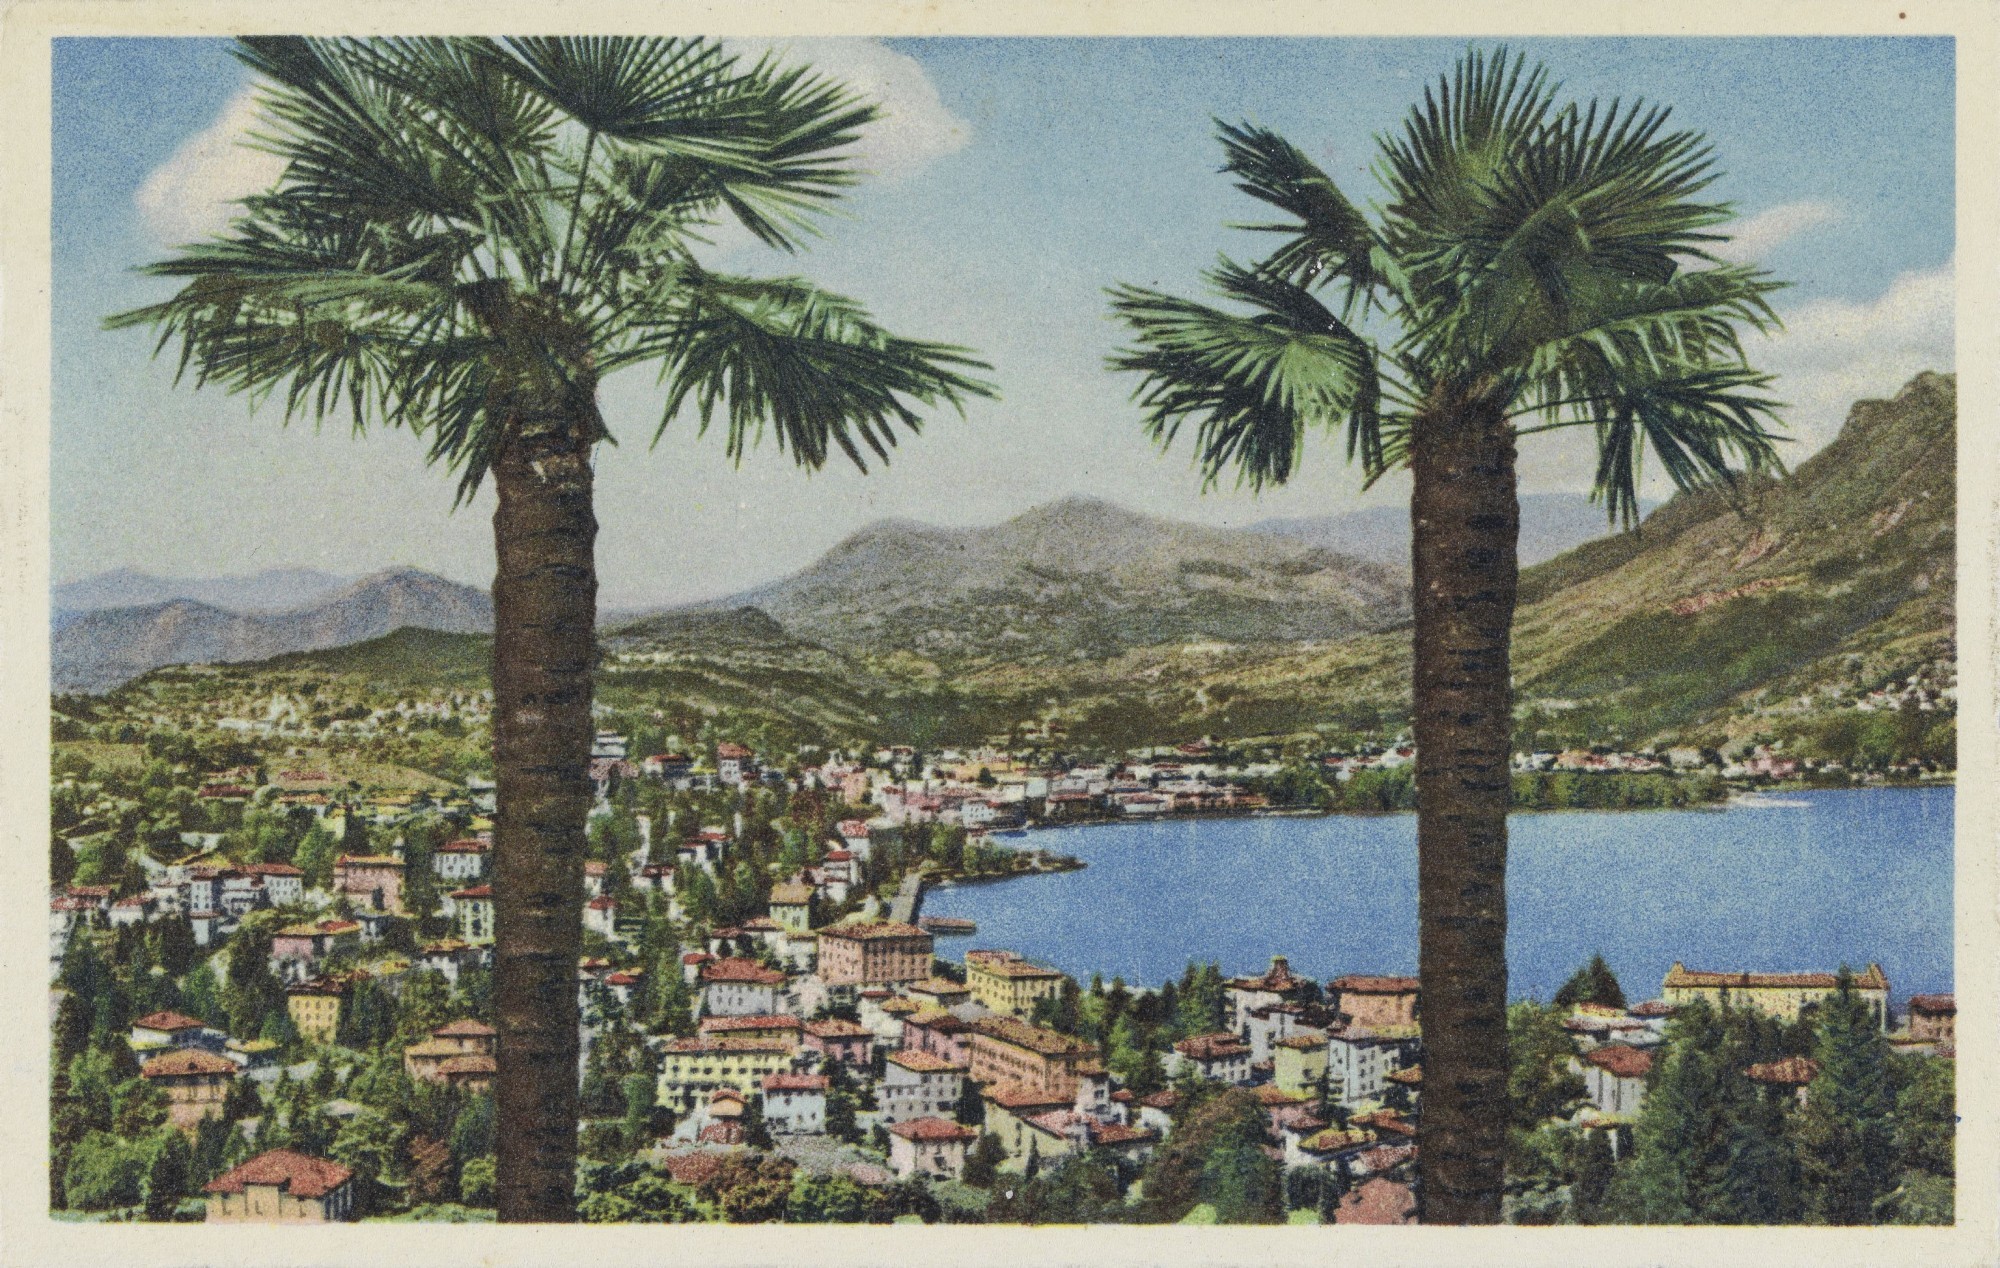 Postkarte aus den 50er-Jahren